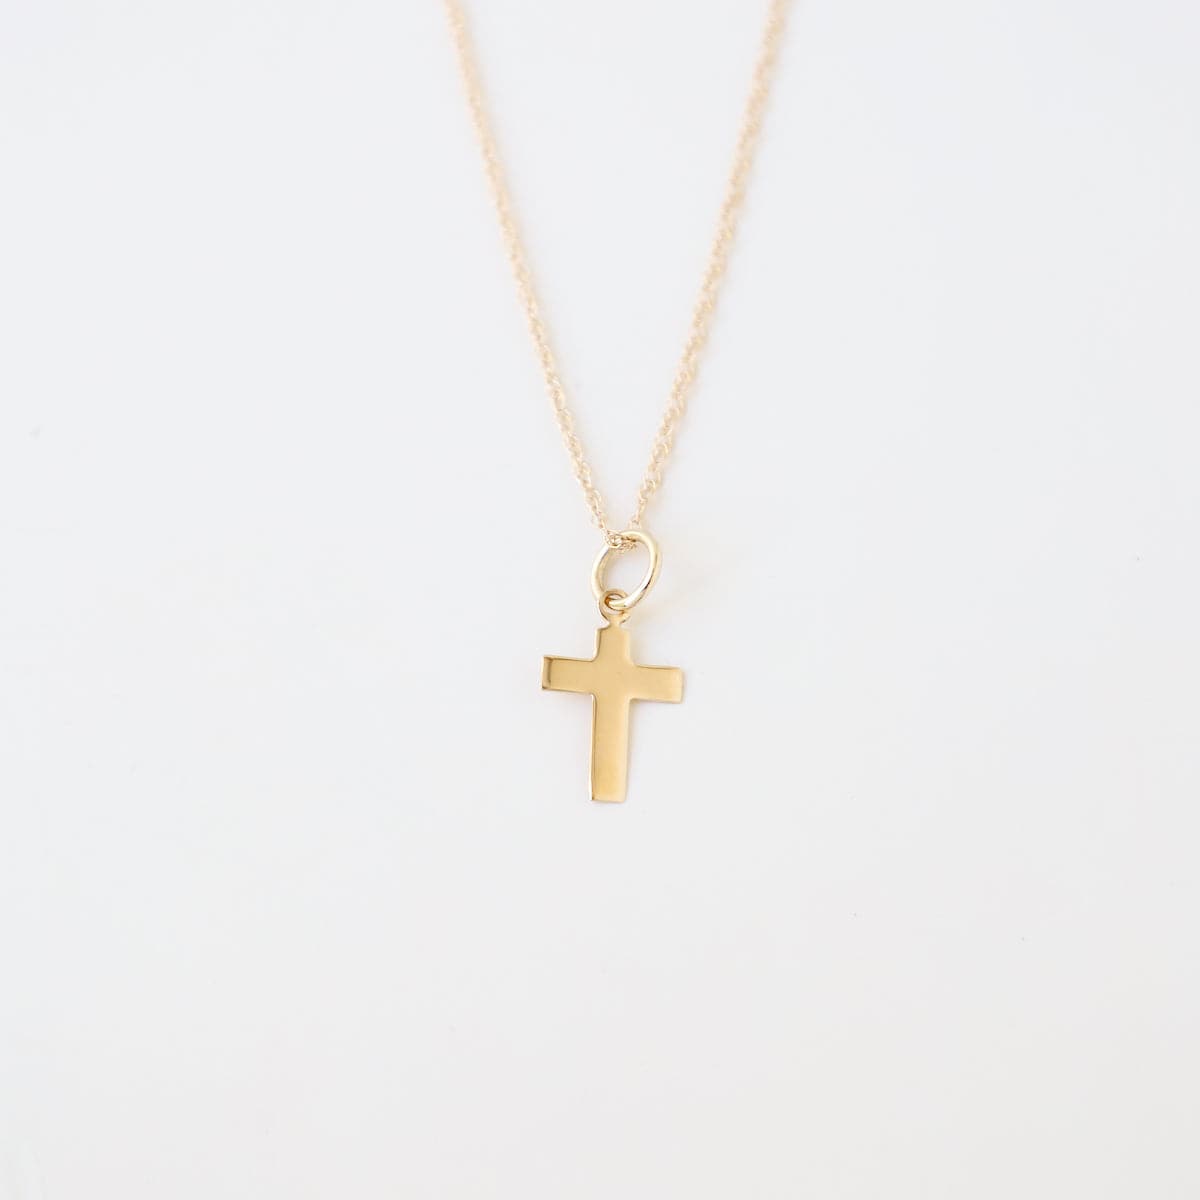 NKL-14K 14k Small Cross Necklace